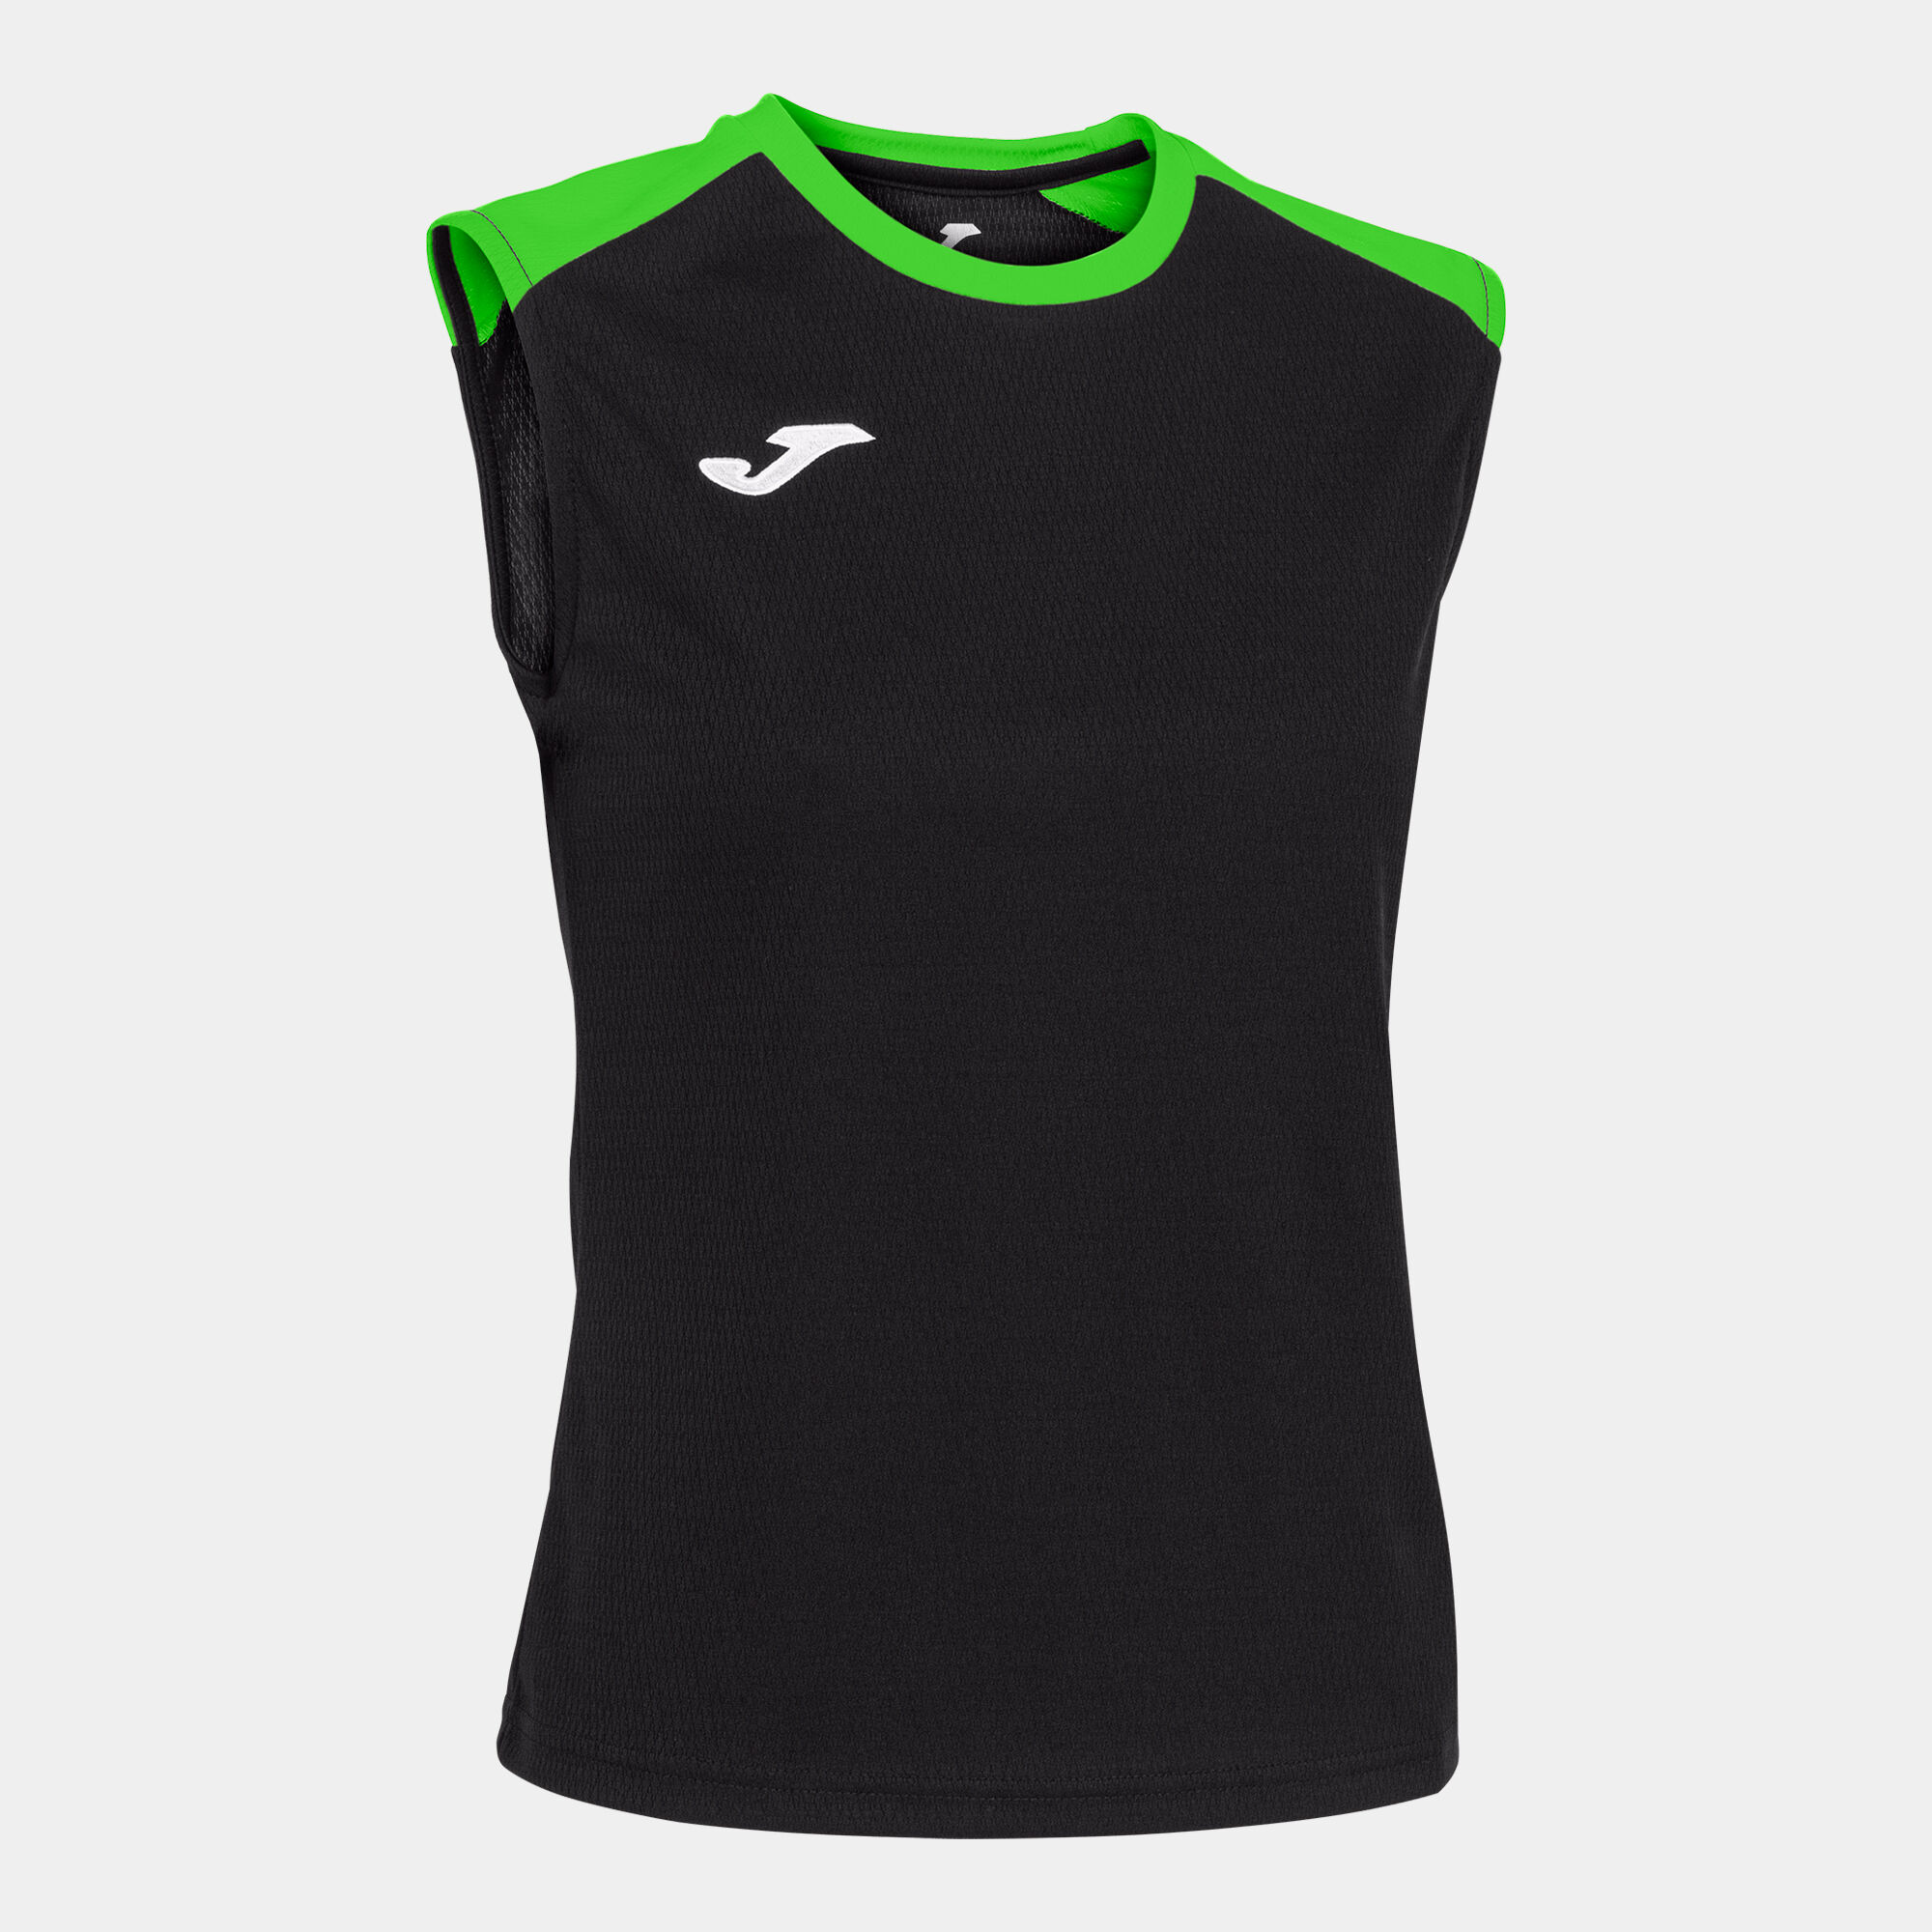 Koszulka na ramiączkach kobiety Eco Championship czarny fluorescencyjny zielony